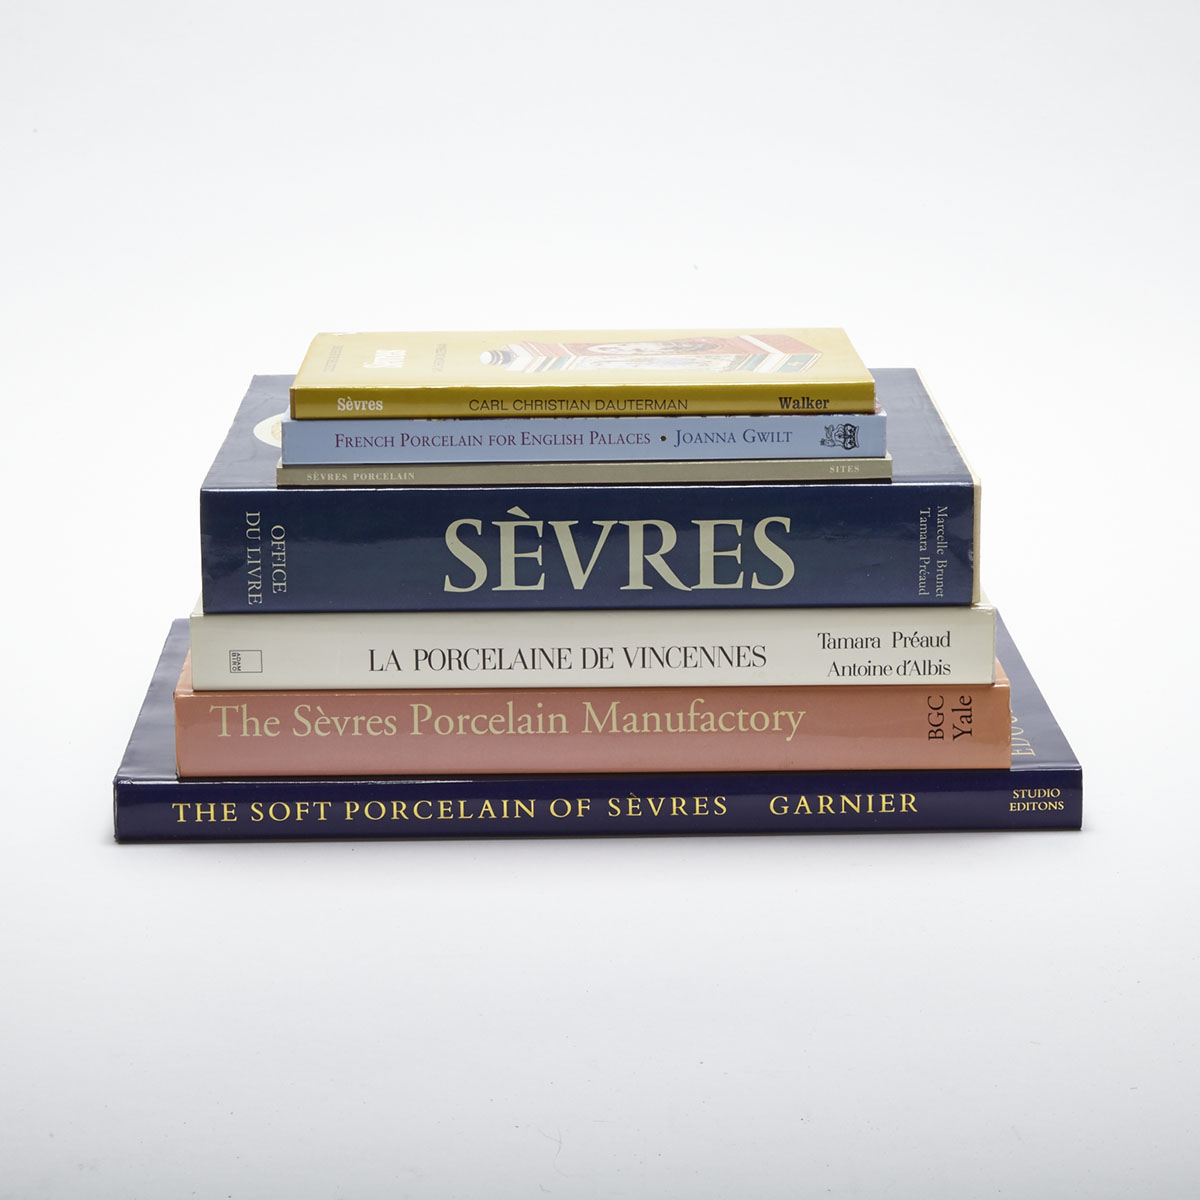 Sèvres (7 volumes) 